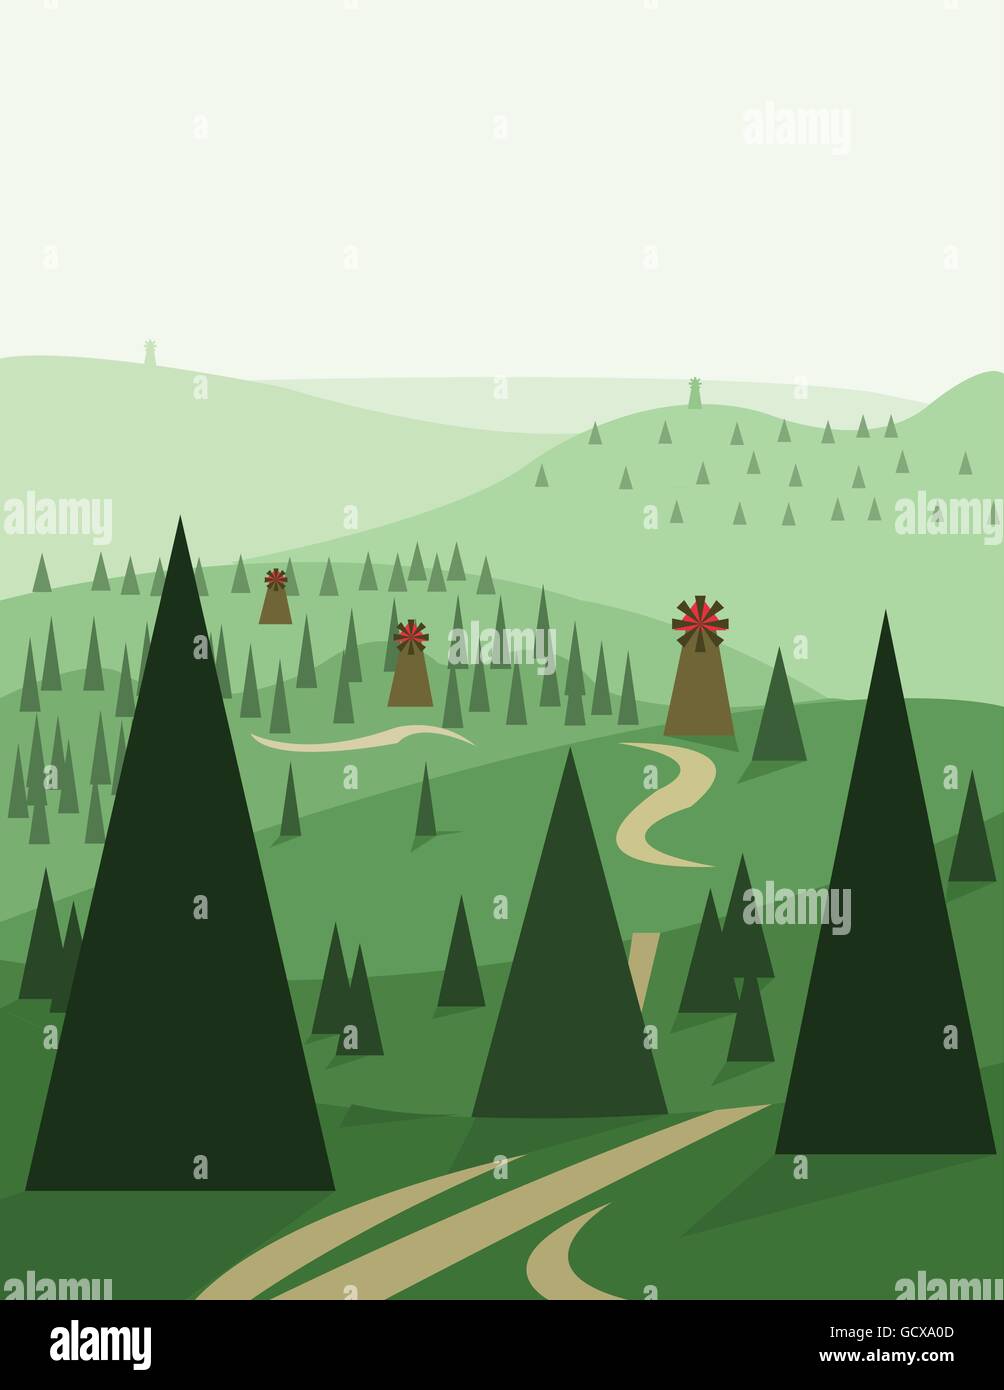 Abstrakte Landschaftsdesign mit grünen Bäumen und Hügeln, Straßen und Windmühlen, flachen Stil. Digitale Vektorgrafik. Stock Vektor